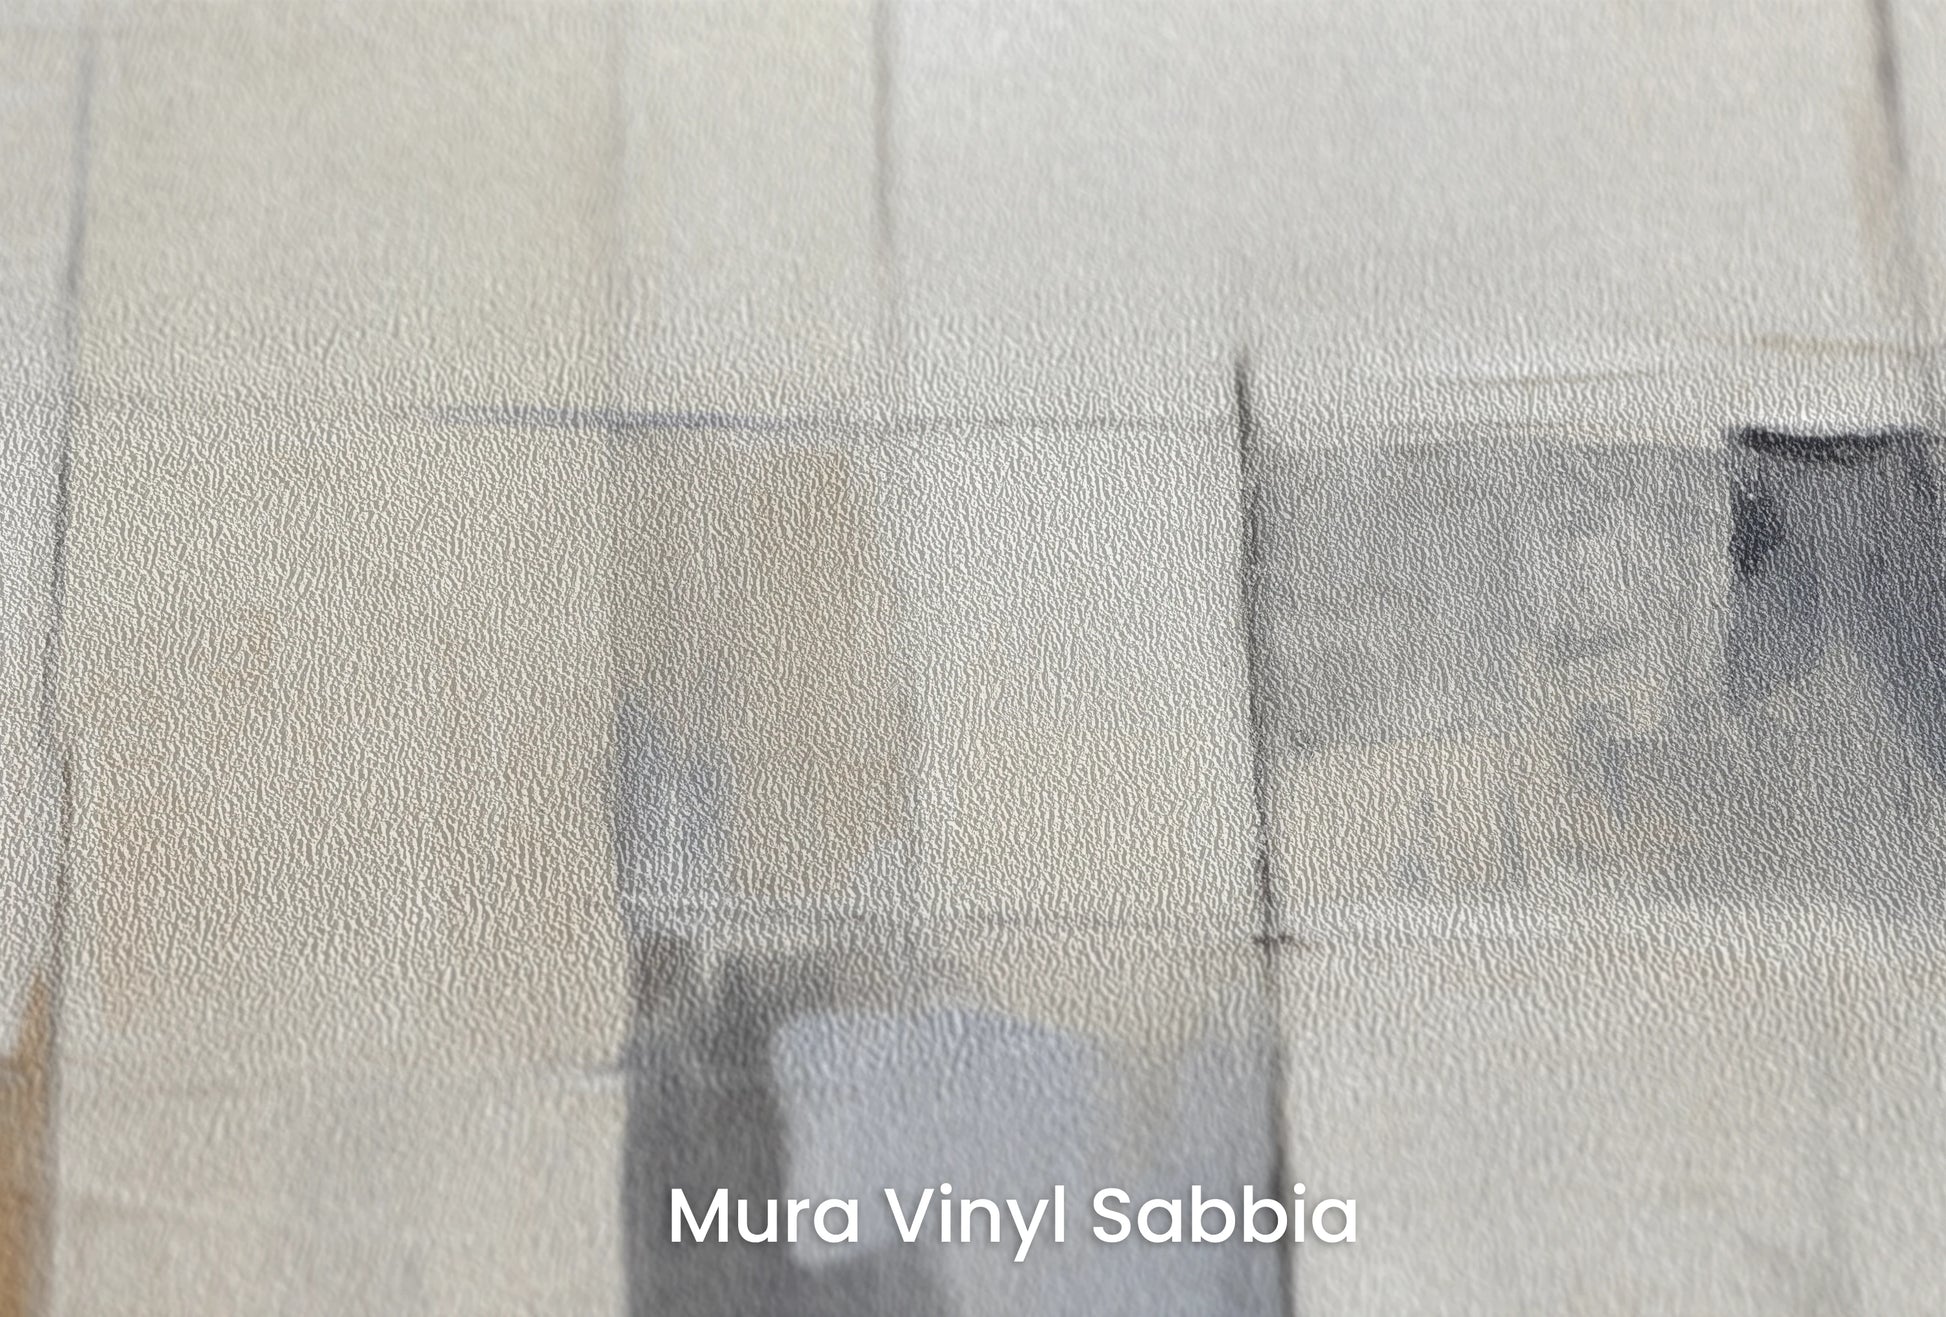 Zbliżenie na artystyczną fototapetę o nazwie Urban Canvas na podłożu Mura Vinyl Sabbia struktura grubego ziarna piasku.